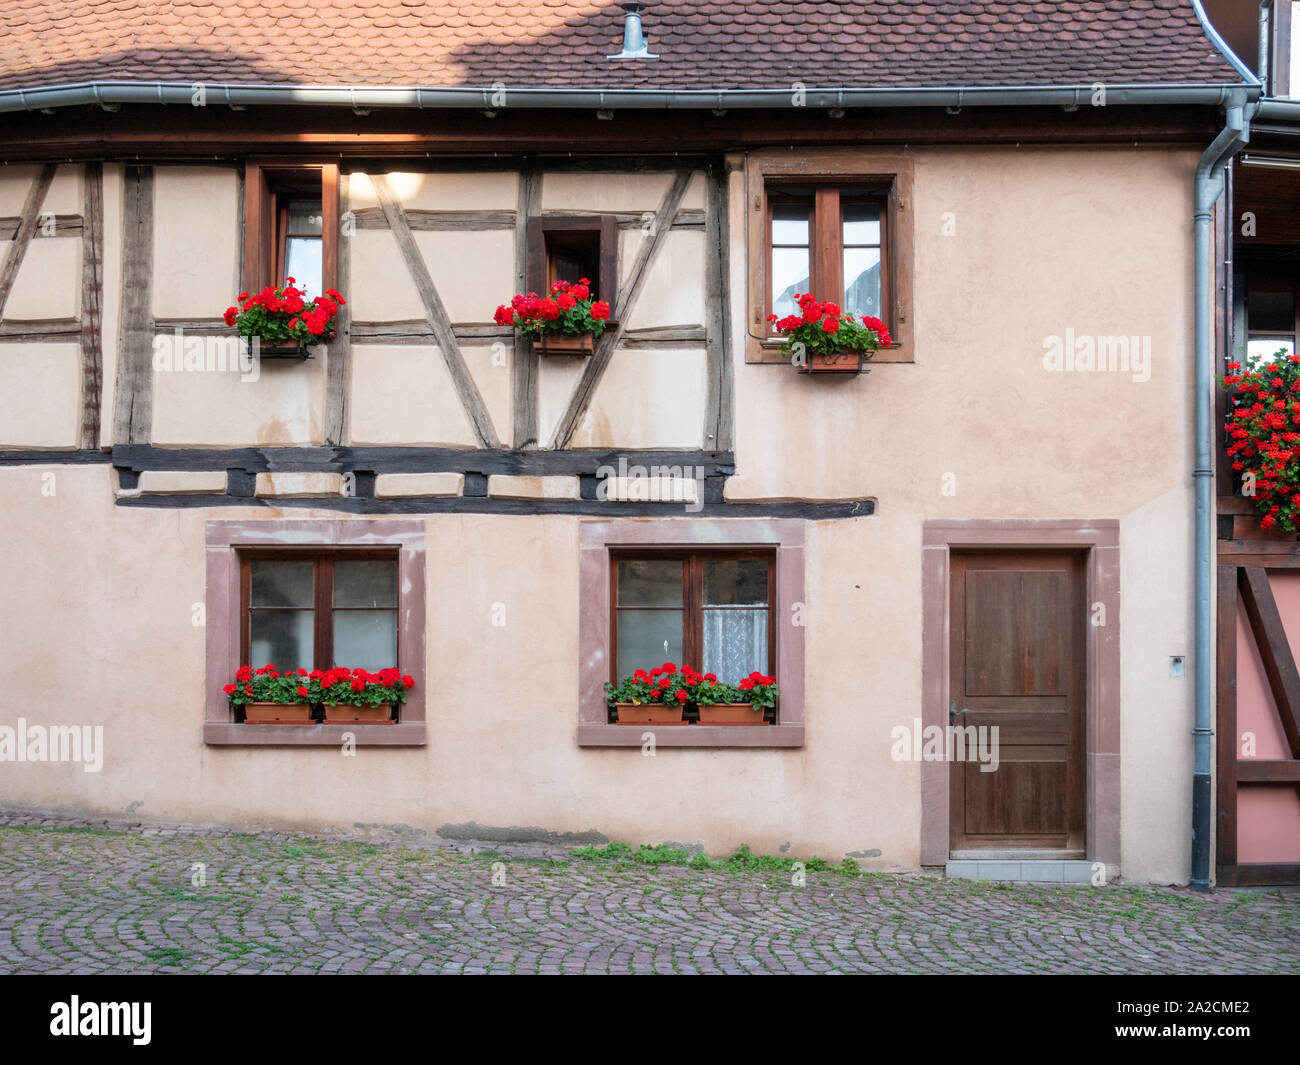 Fachwerkhaus Gebäude im Zentrum von Eguisheim Elsass Frankreich einer hübschen mittelalterlichen Stadt im Herzen des Elsass Wein Region und beliebte Reise dest Stockfoto